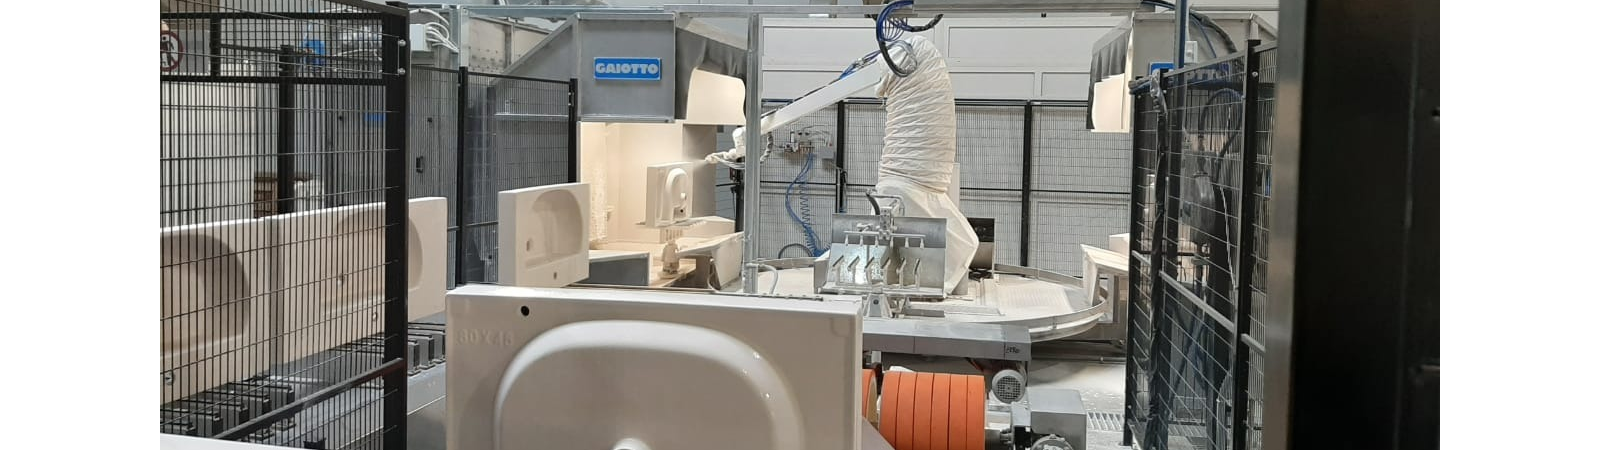 Kerama Marazzi将Gaiotto机器人施釉技术引入洁具生产